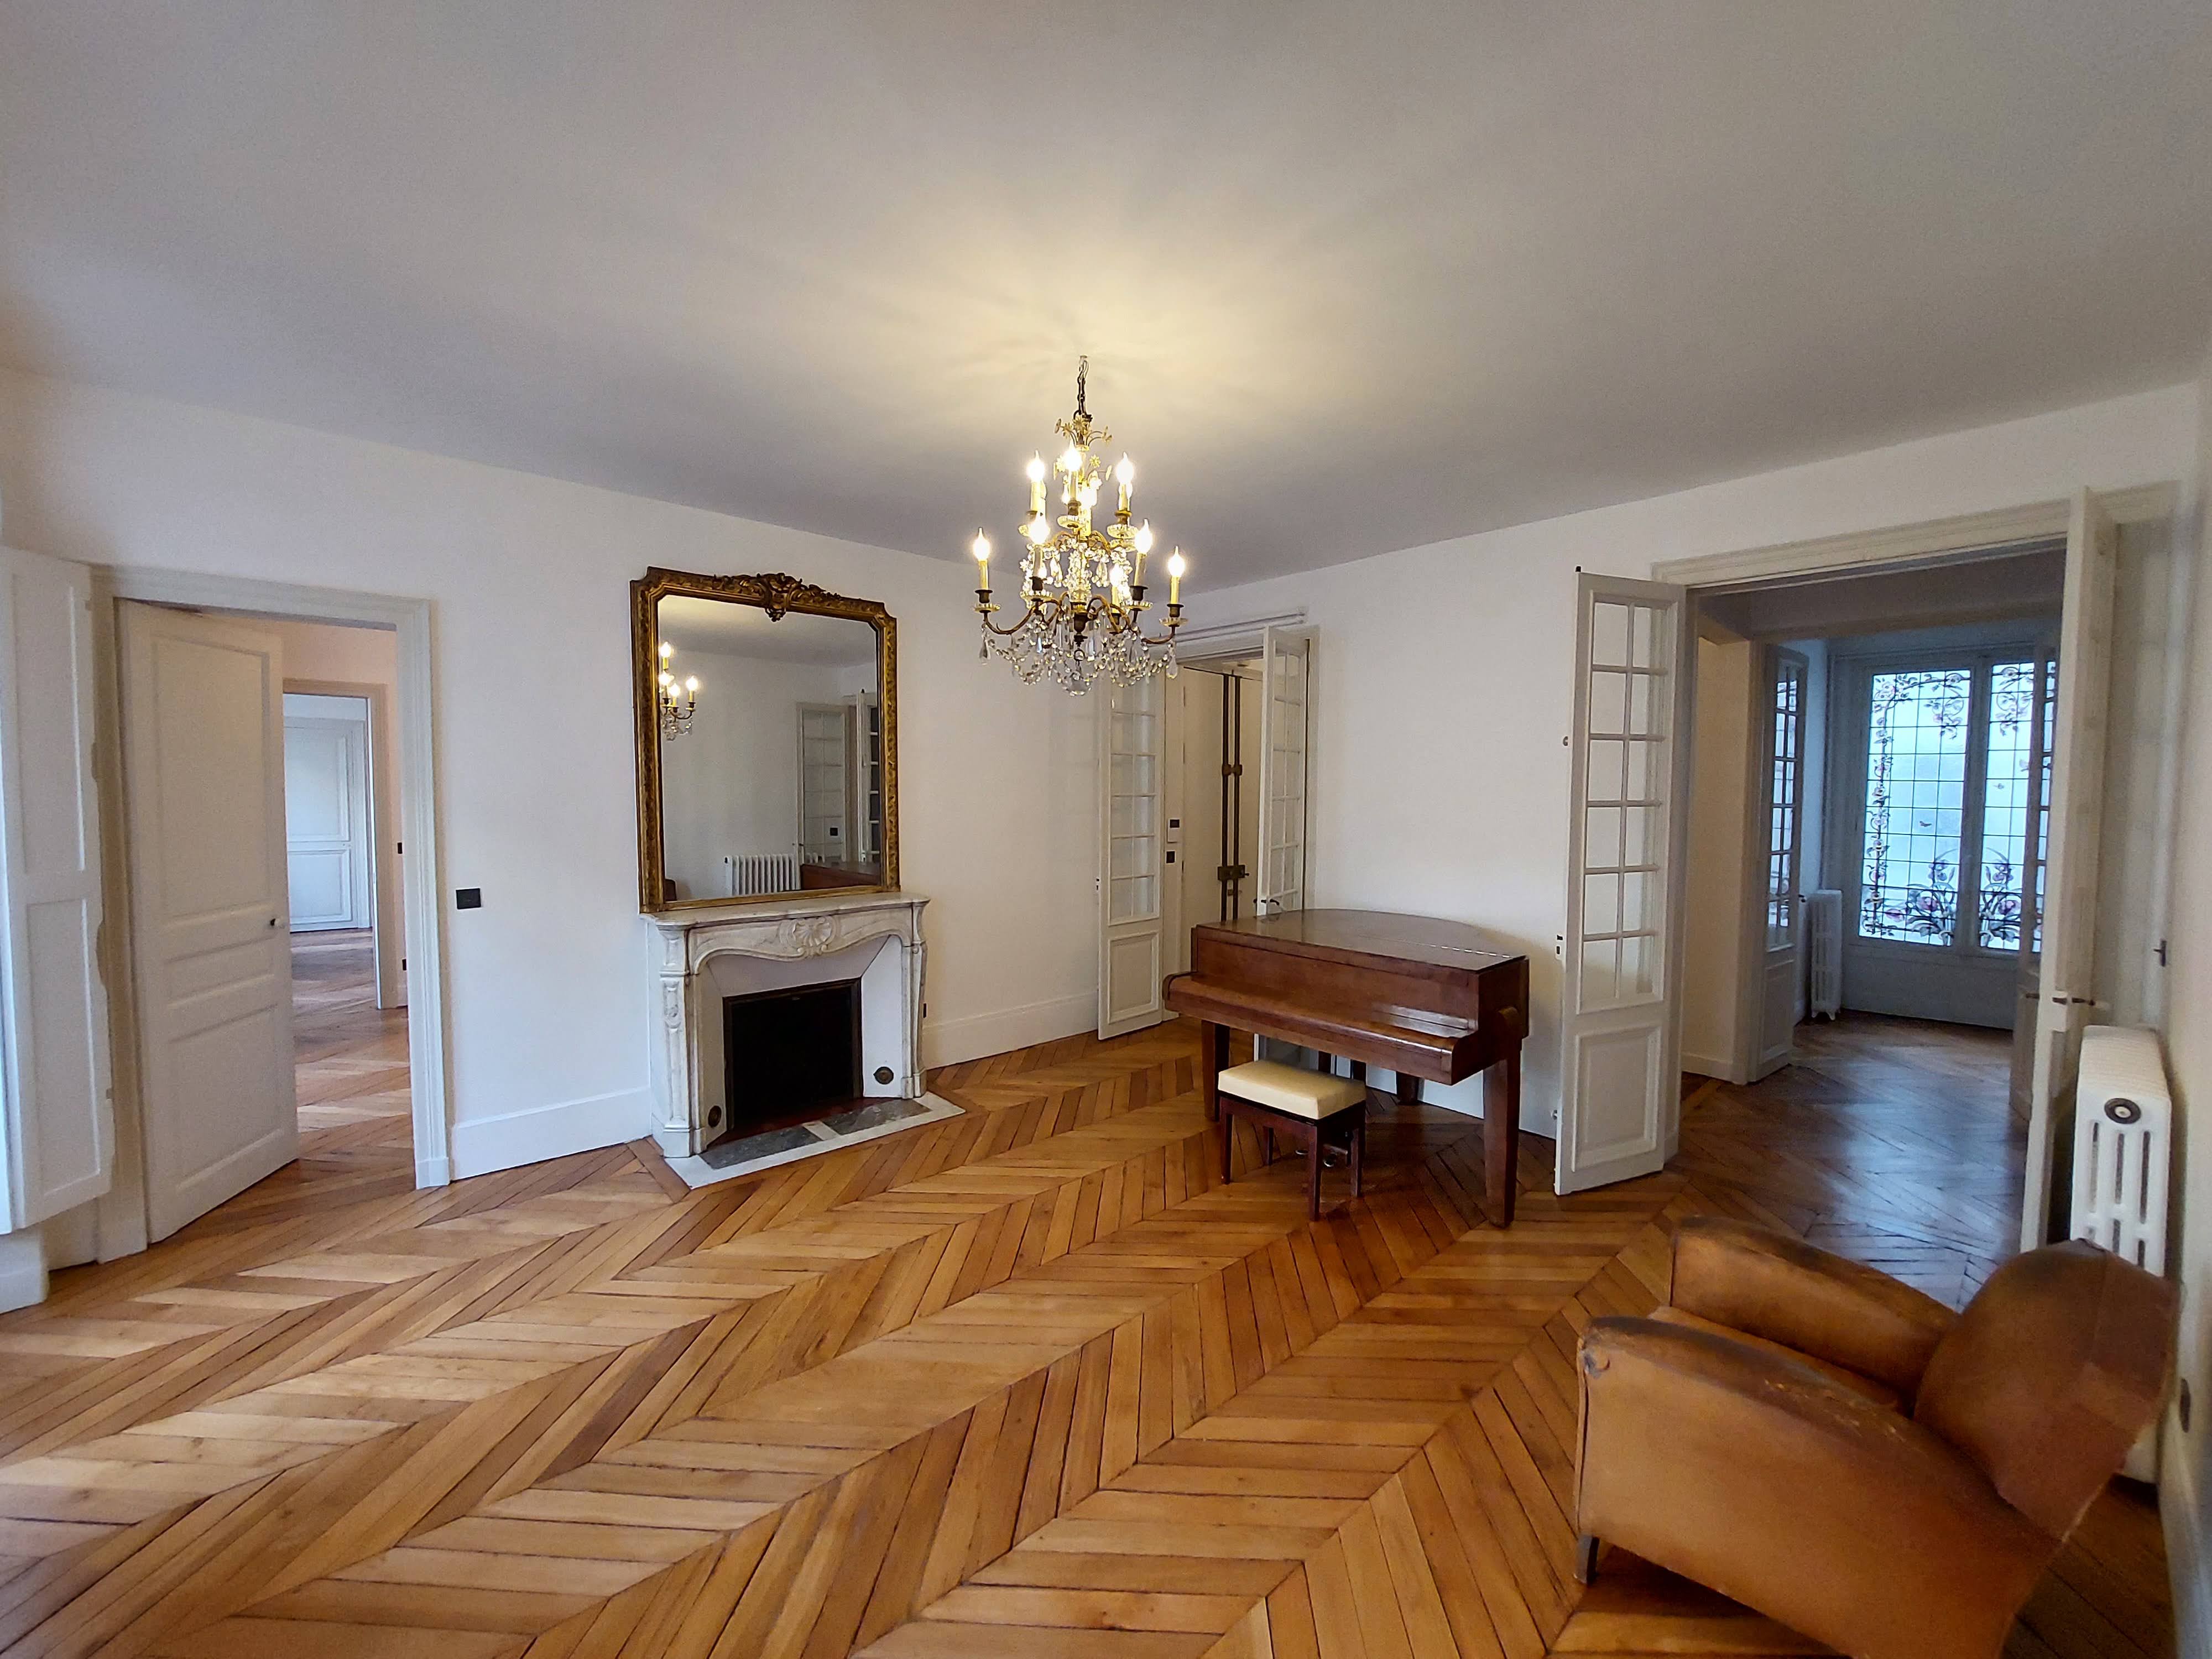 Image Sale apartment 10 rooms 221 m² Paris 6E (75006) 3.990.000 € 0